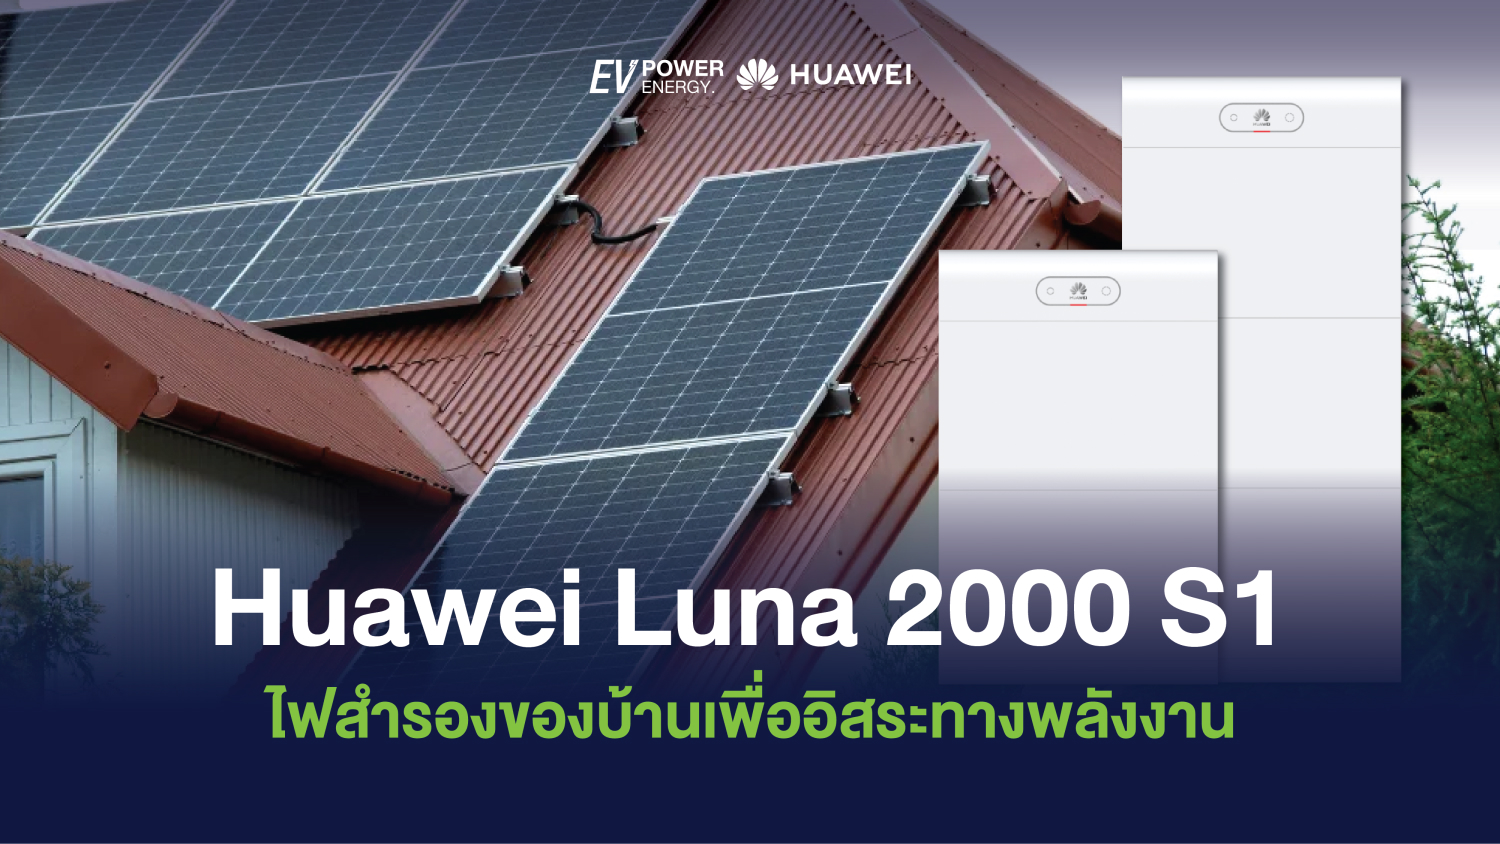 Huawei LUNA 2000 S1 ไฟสำรองของบ้านเพื่ออิสระทางพลังงาน 1